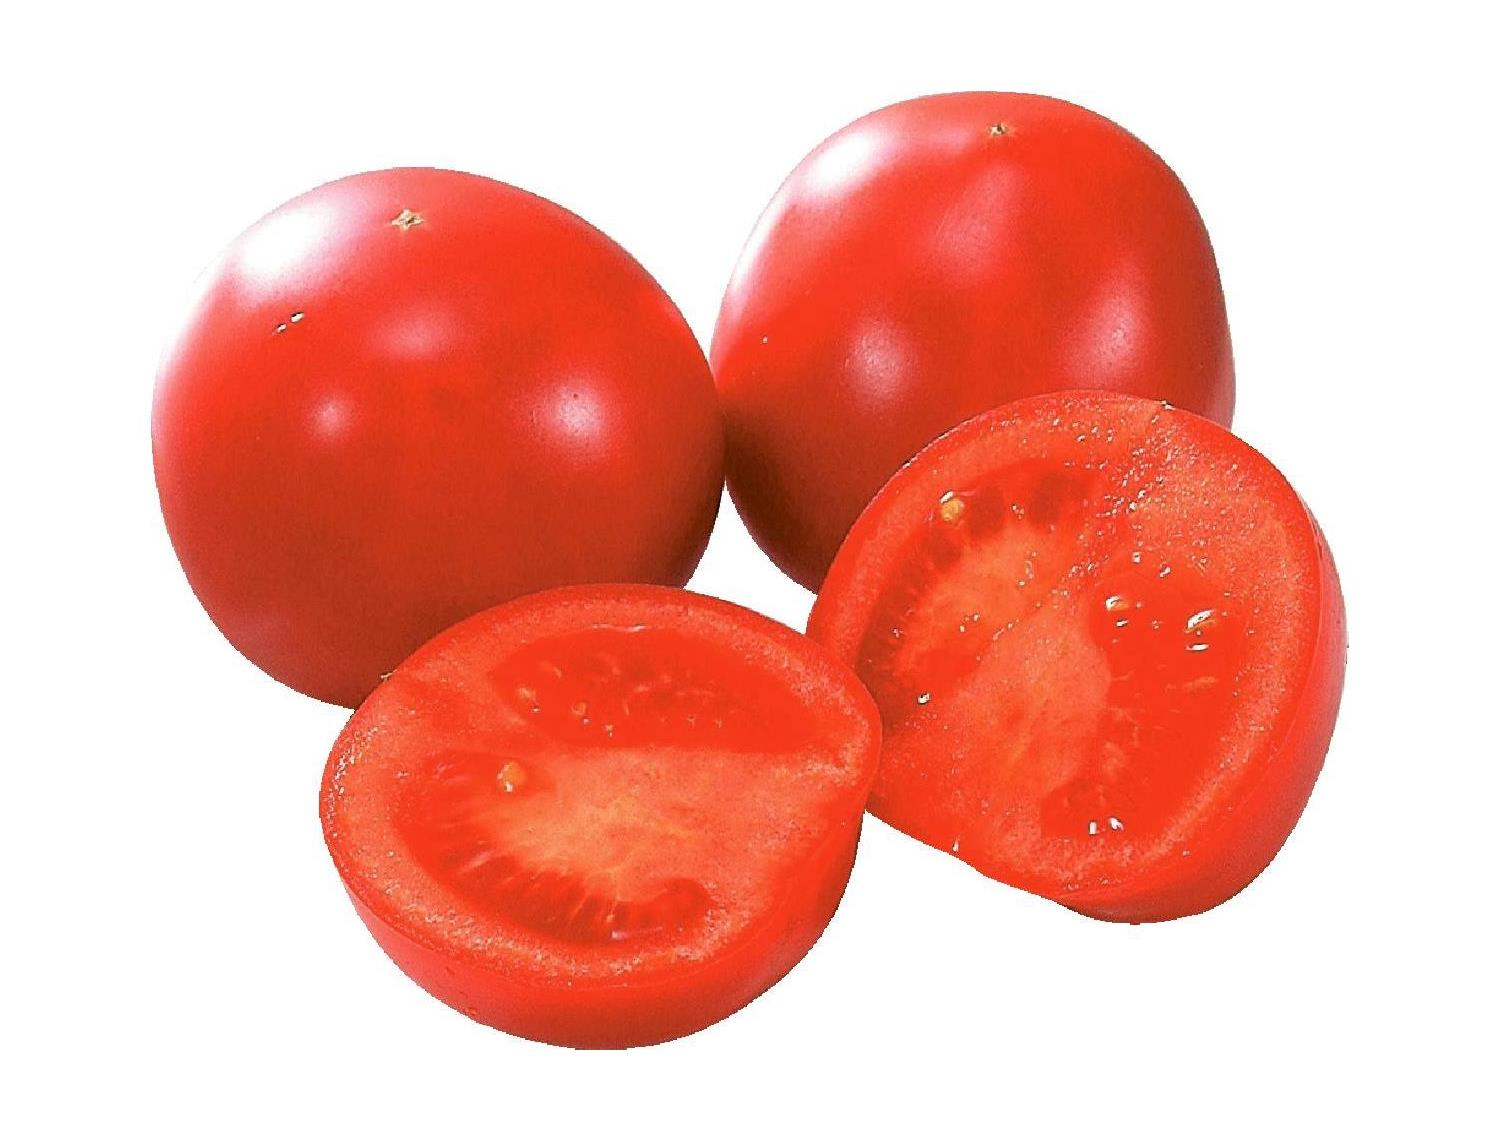 【ふぞろい】日持ちの良いトマト